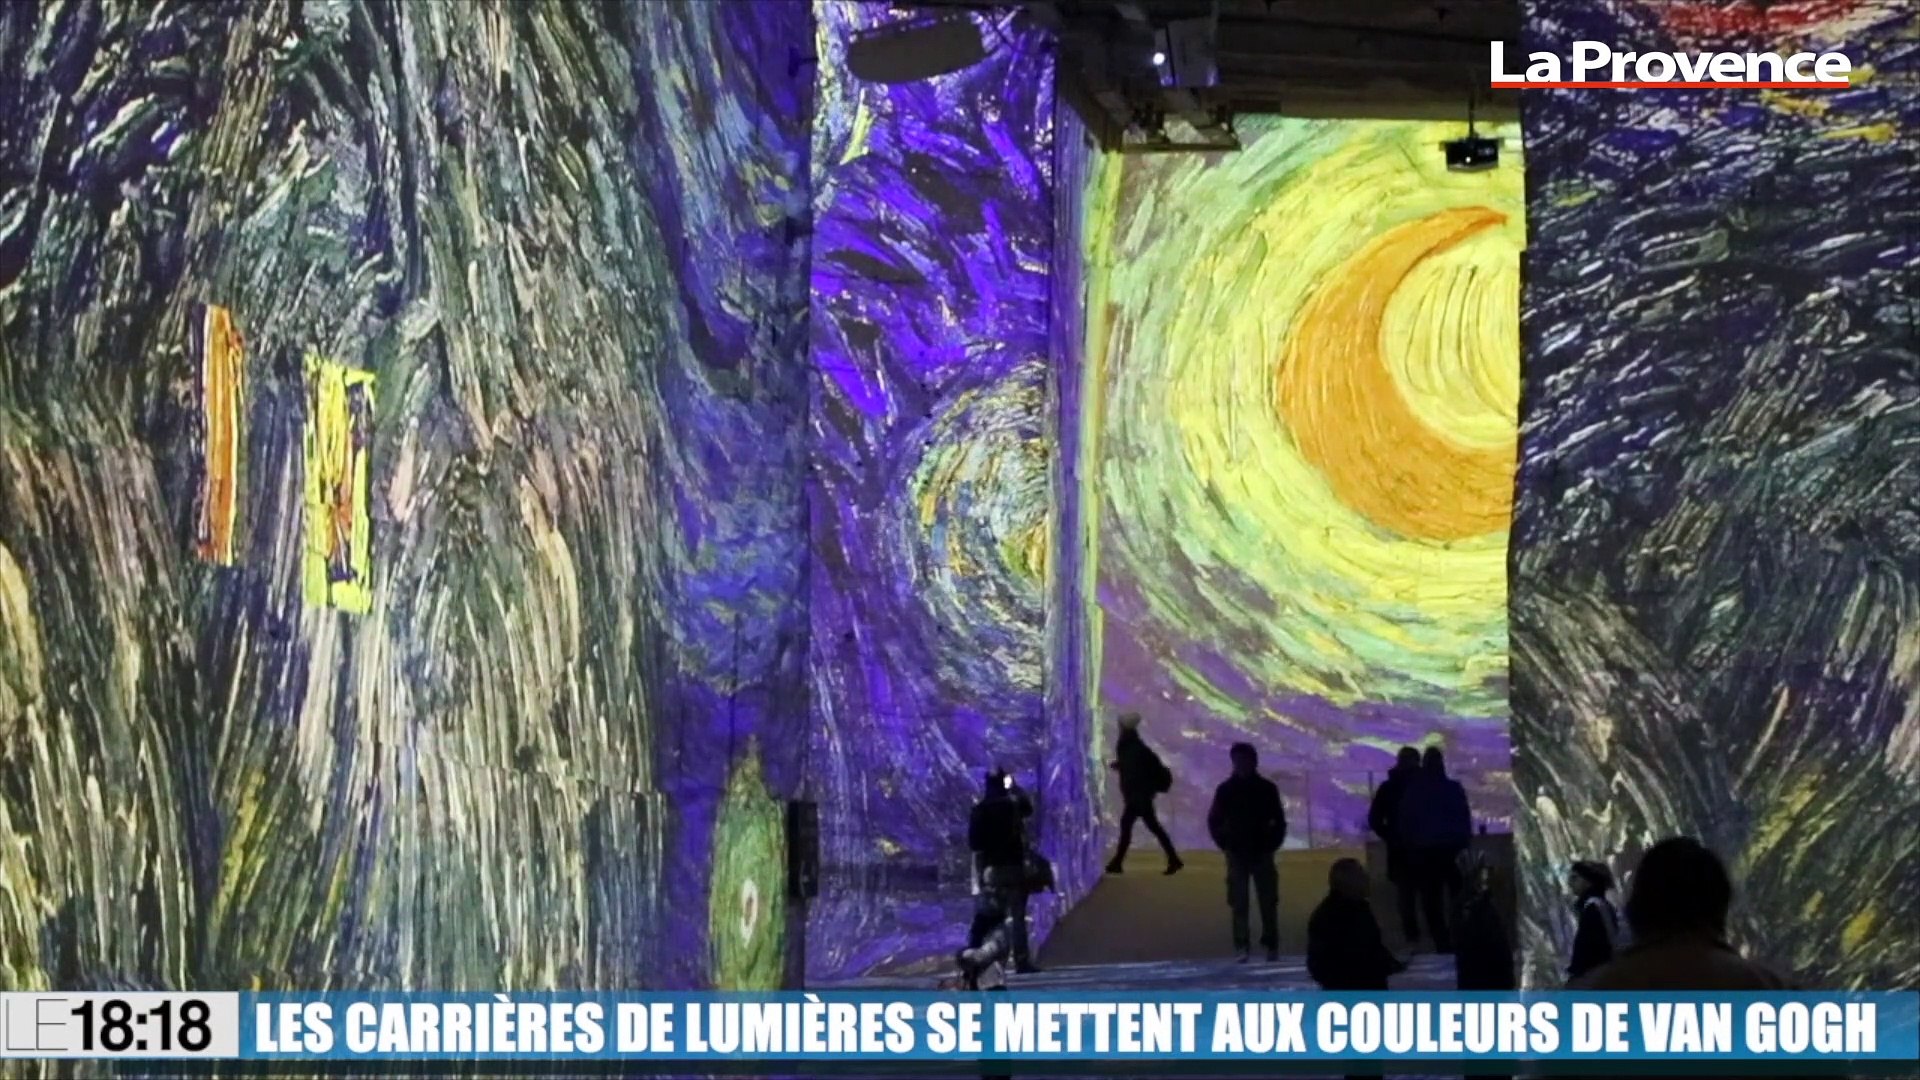 Le 18:18 : découvrez l'exposition Van Gogh dans les Carrières de lumières  des Baux-de-Provence - Vidéo Dailymotion